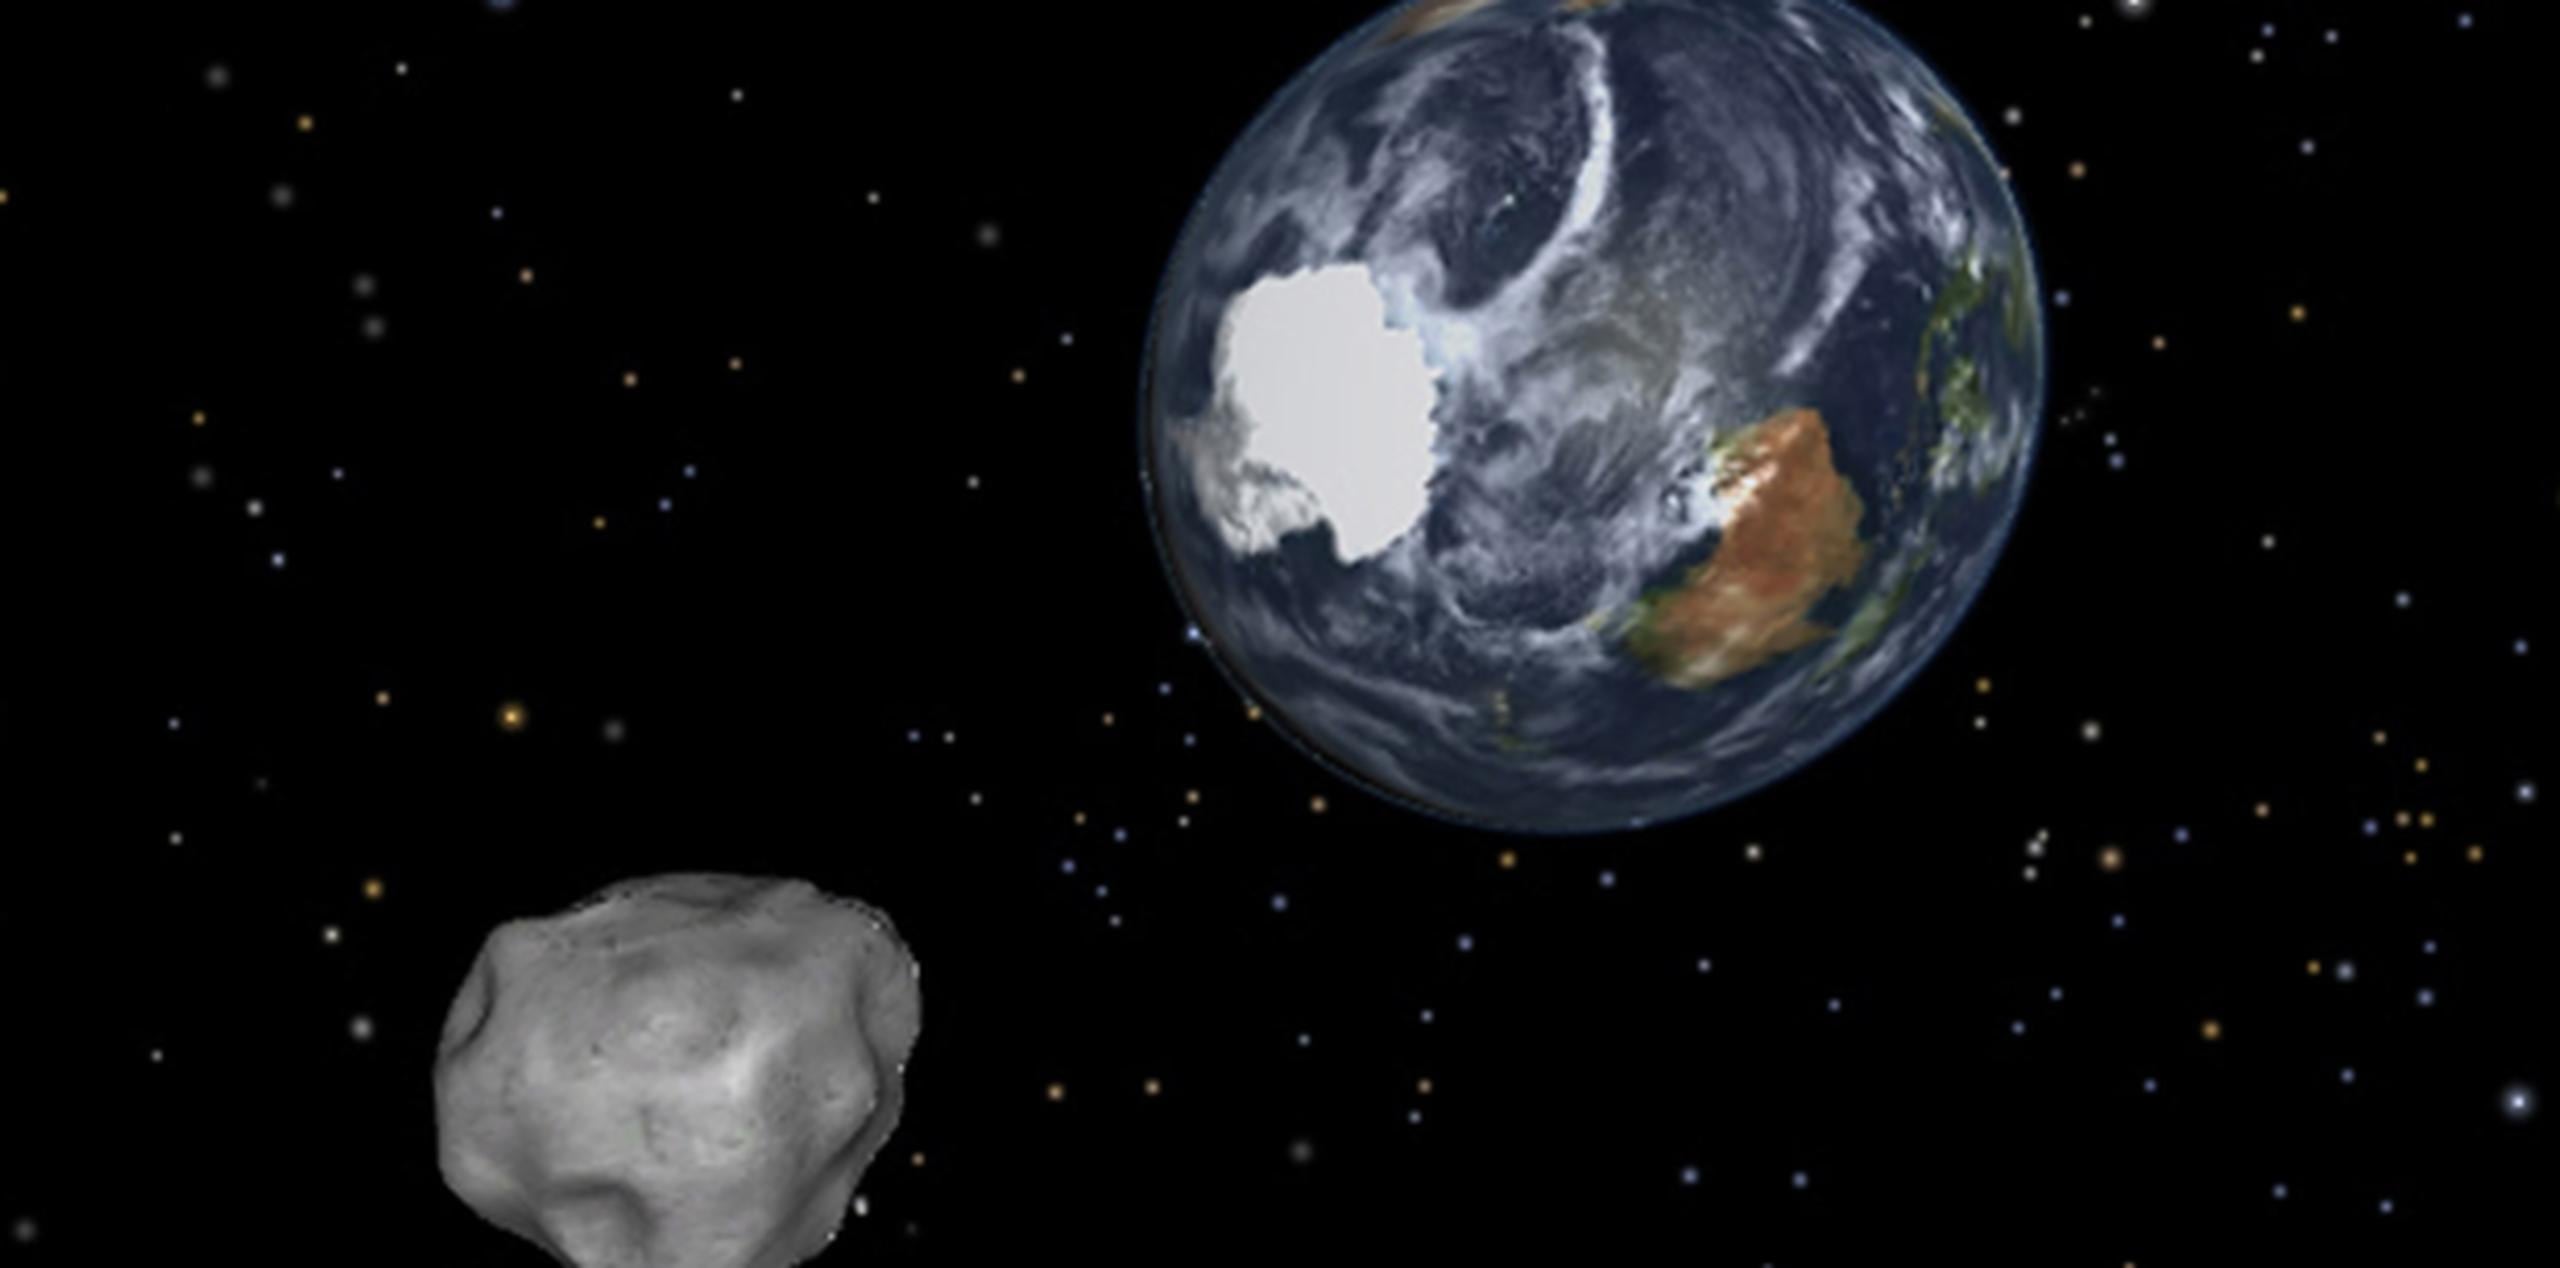 El asteroide, denominado 2013ET, ya es observable en el cielo nocturno con sofisticados telescopios de aficionados. (Archivo)